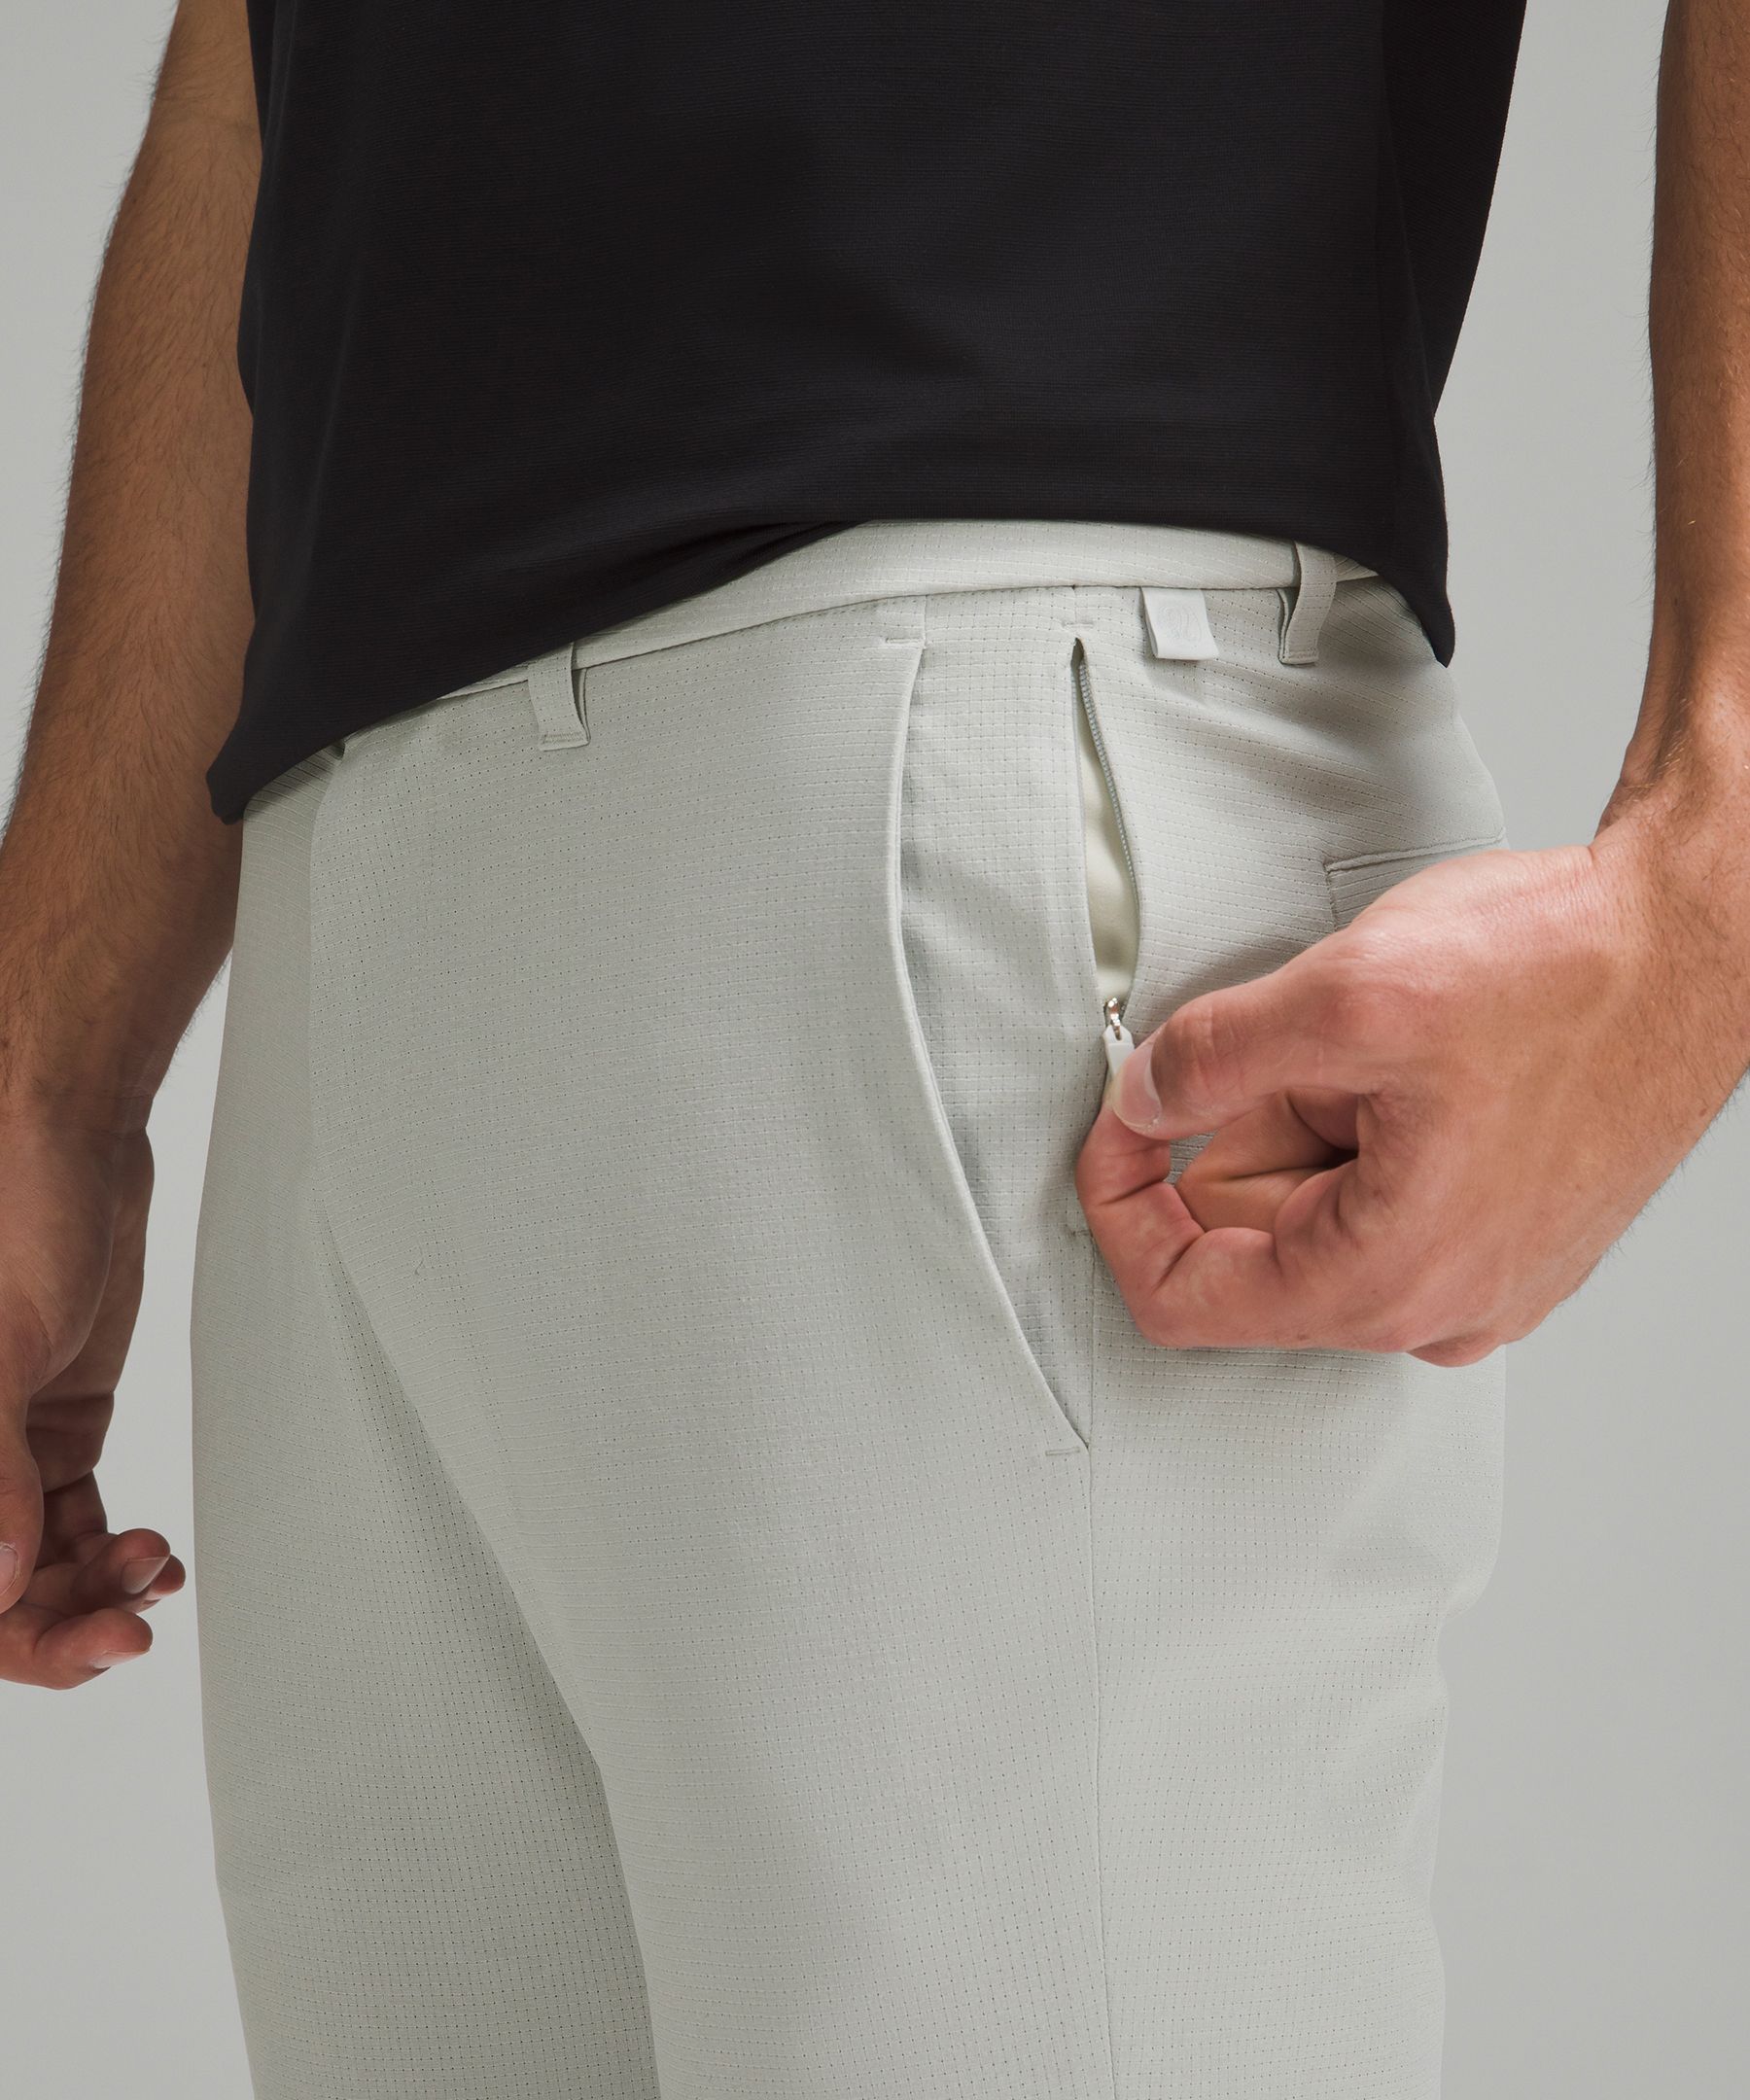 Lululemon athletica Commission Slim-Fit Pant 32 *WovenAir, Men's Trousers